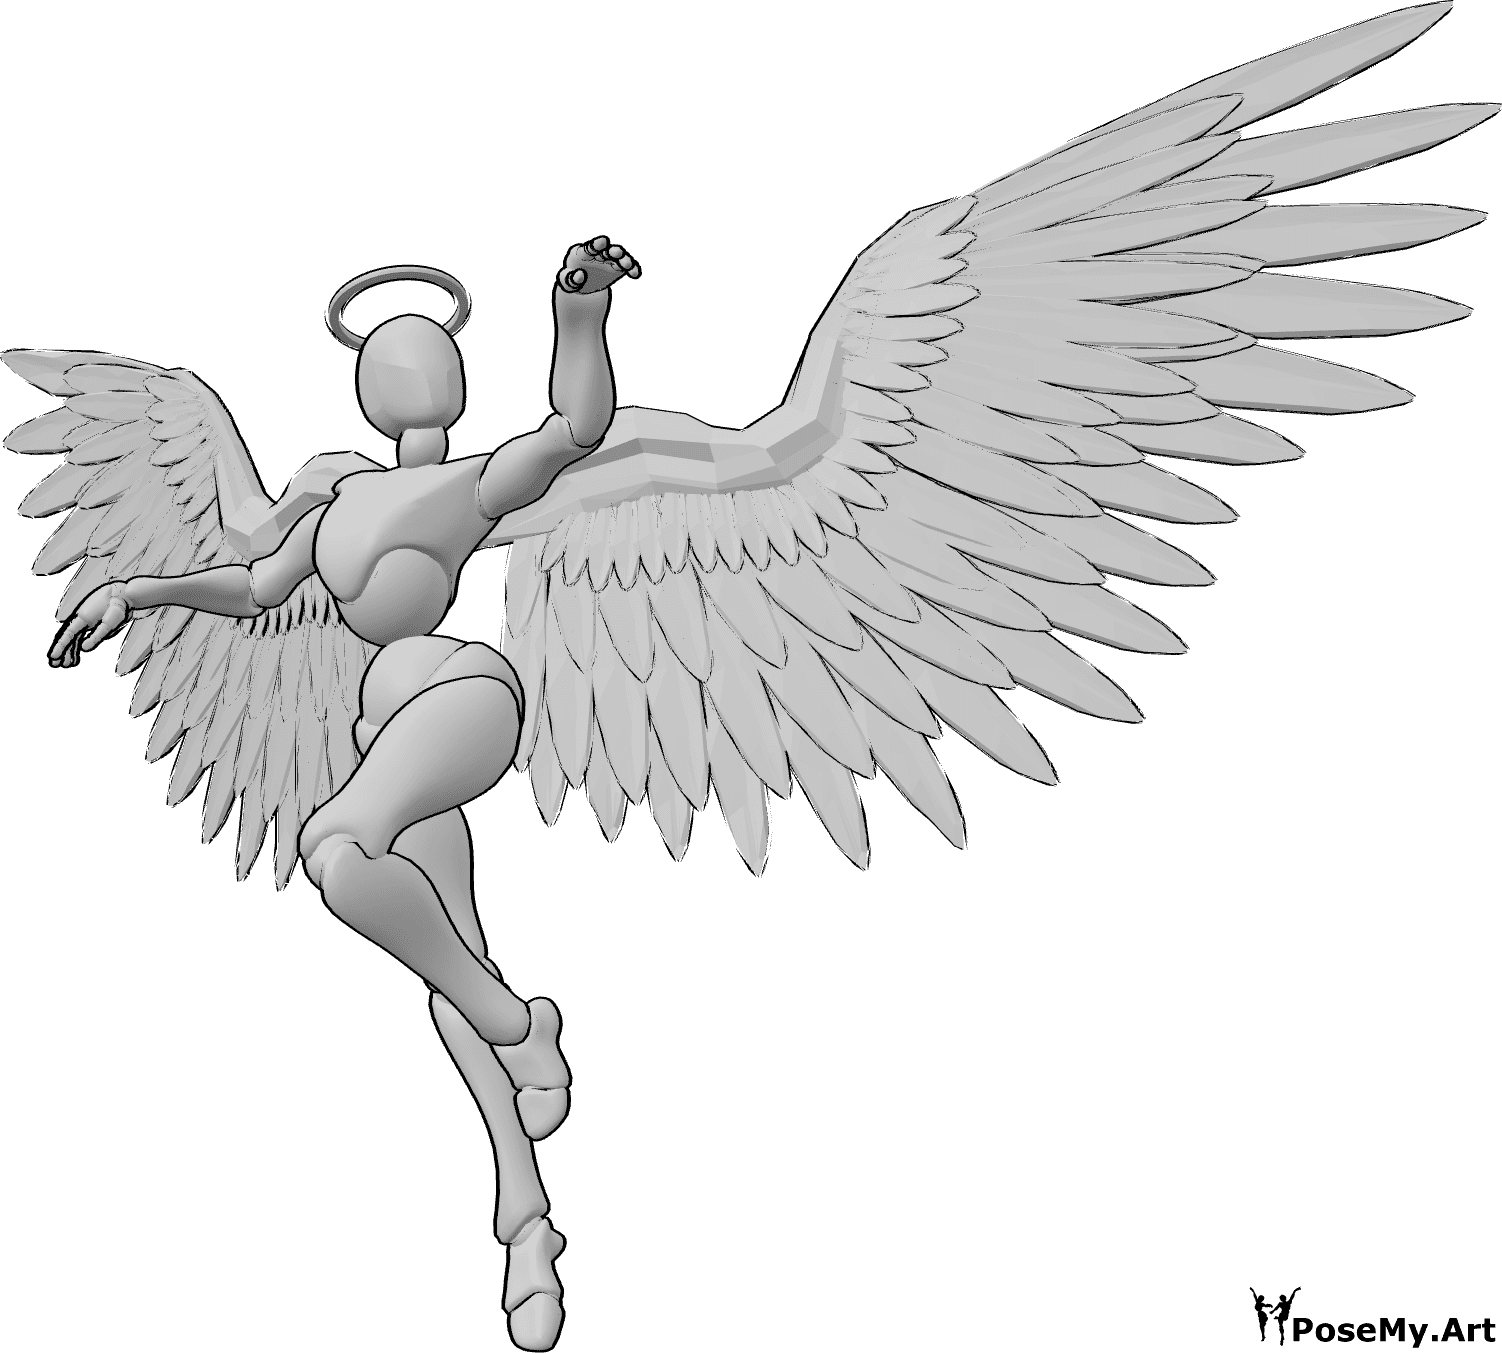 Référence des poses- Ange féminin dansant - Ange féminin volant et dansant dans les airs, levant les mains et regardant vers la gauche.